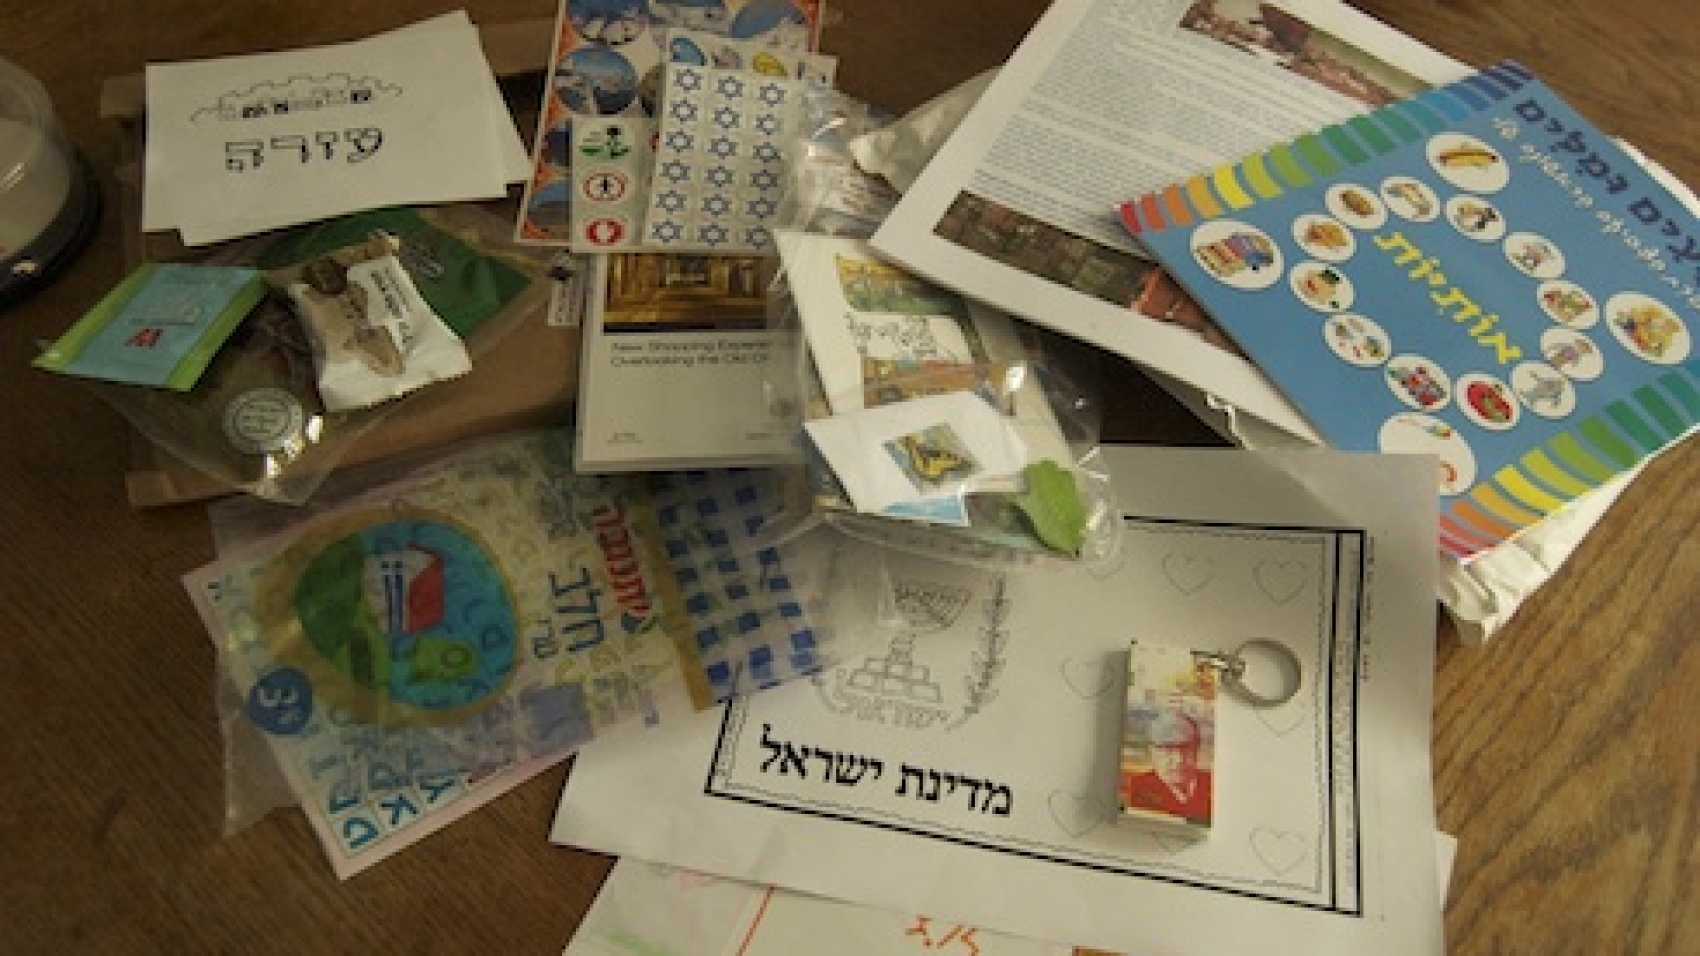 Israel Cultural exchange kid package via birkat chaverim